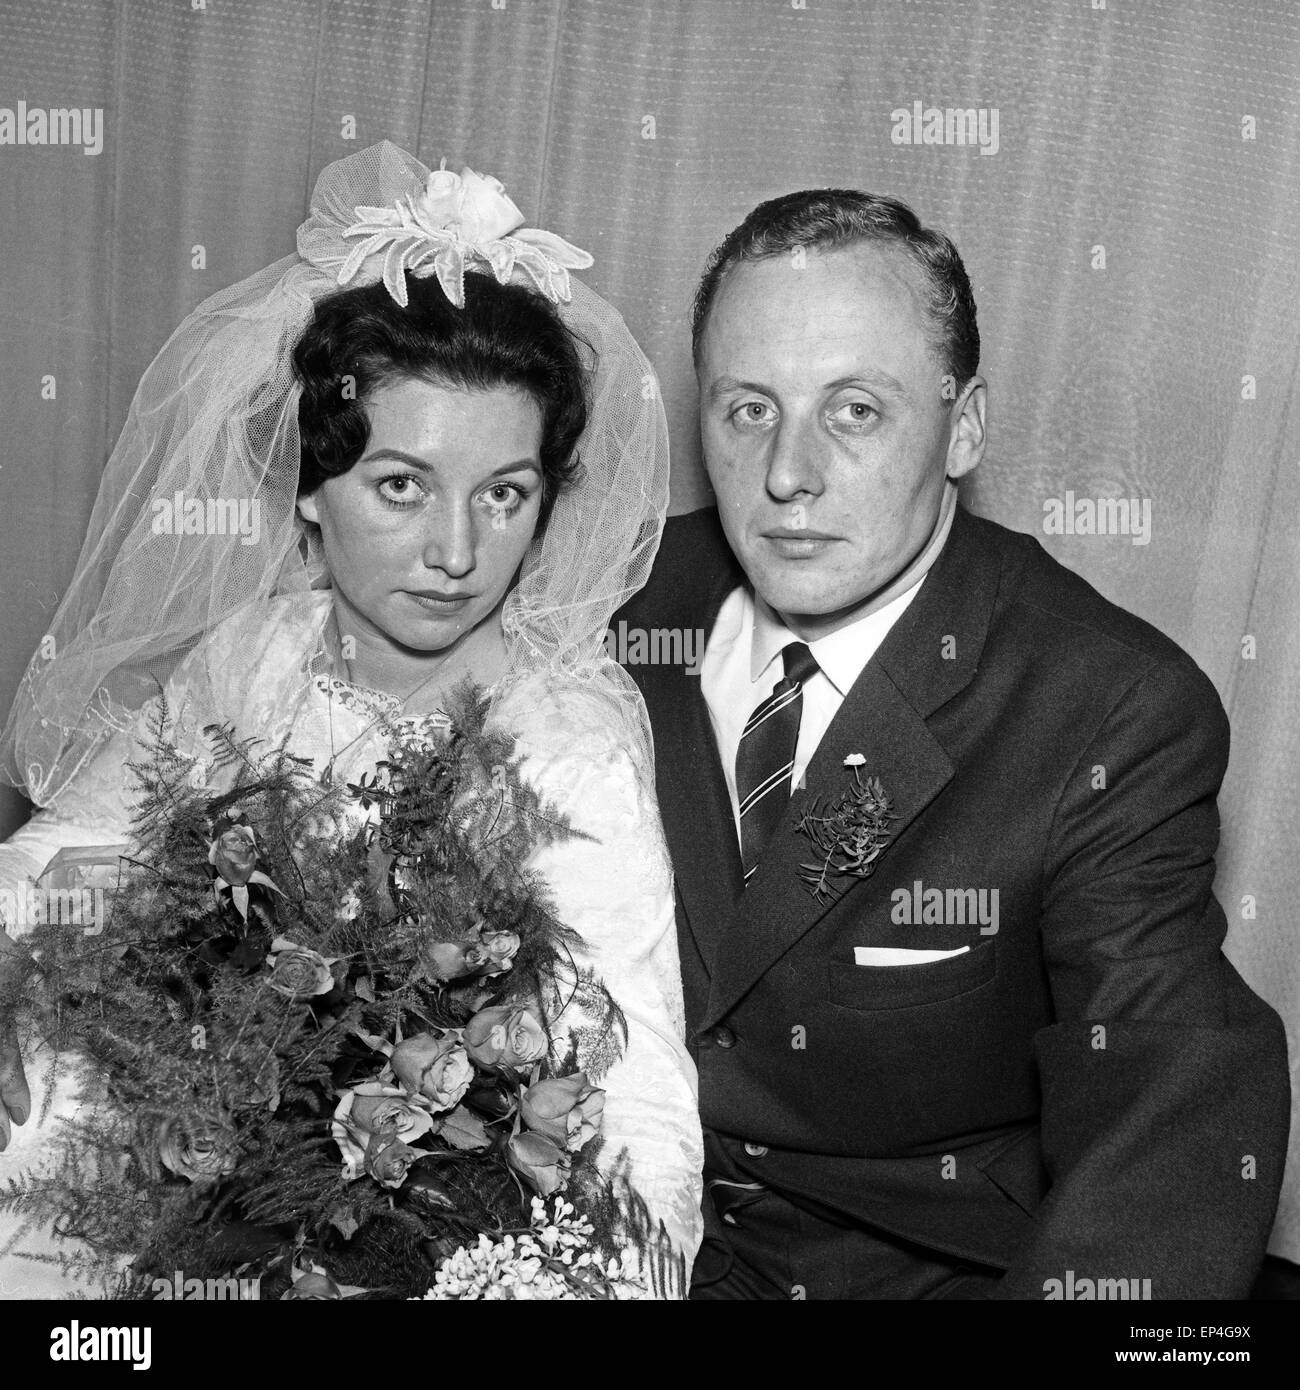 Ein Brautpaar an seinem Hochzeitstag, Deutschland 1960er Jahre. A bridal coiple on its wedding day, Germany 1960s. Stock Photo